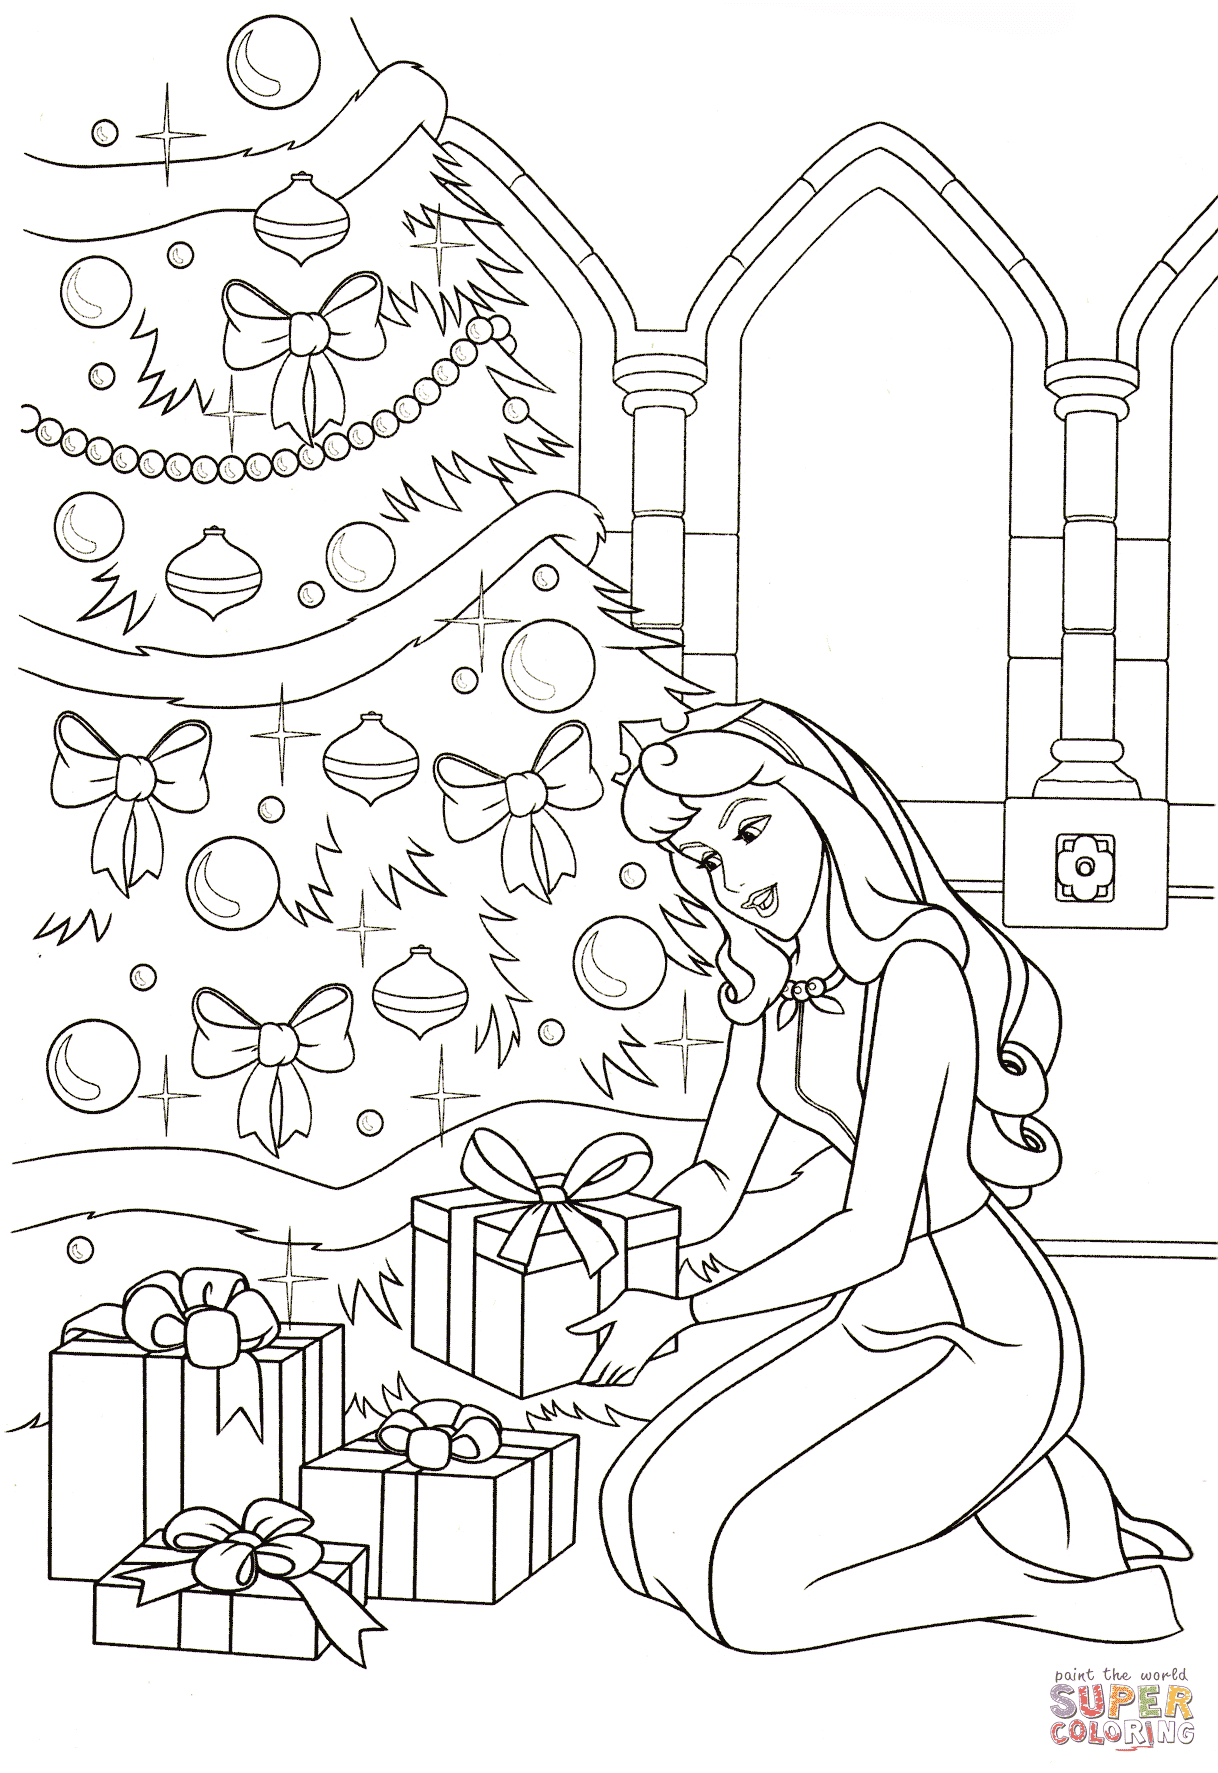 يضع Aurora جميع الهدايا تحت صفحة تلوين الشجرة